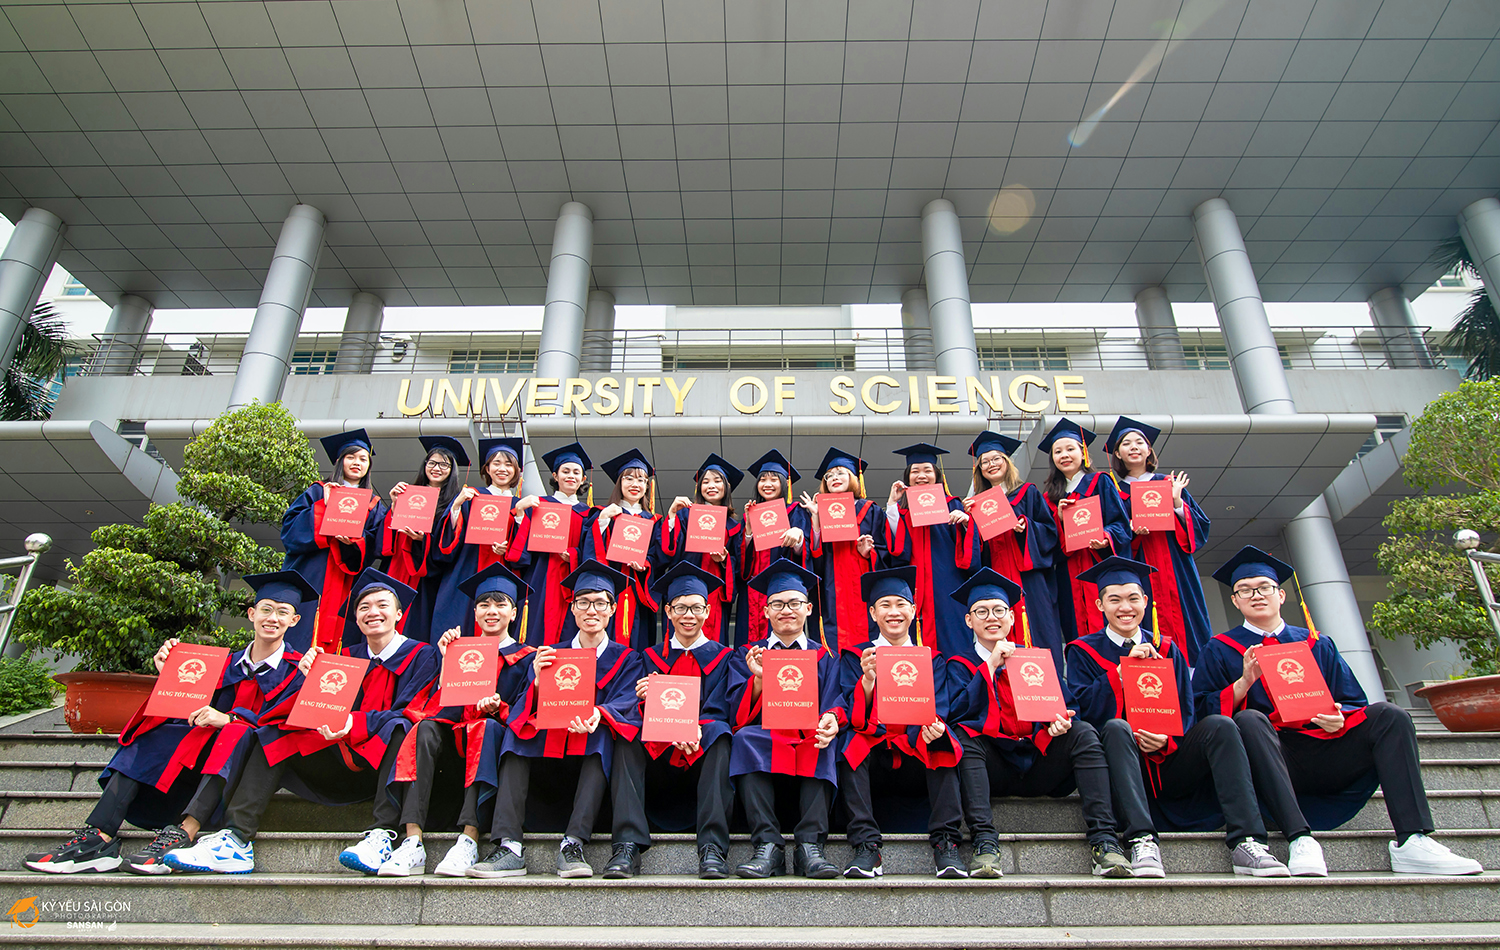 Tuyển sinh viên học Thạc sĩ bằng đôi tại Trường Đại học Quốc Gia Trung Ương Đài Loan